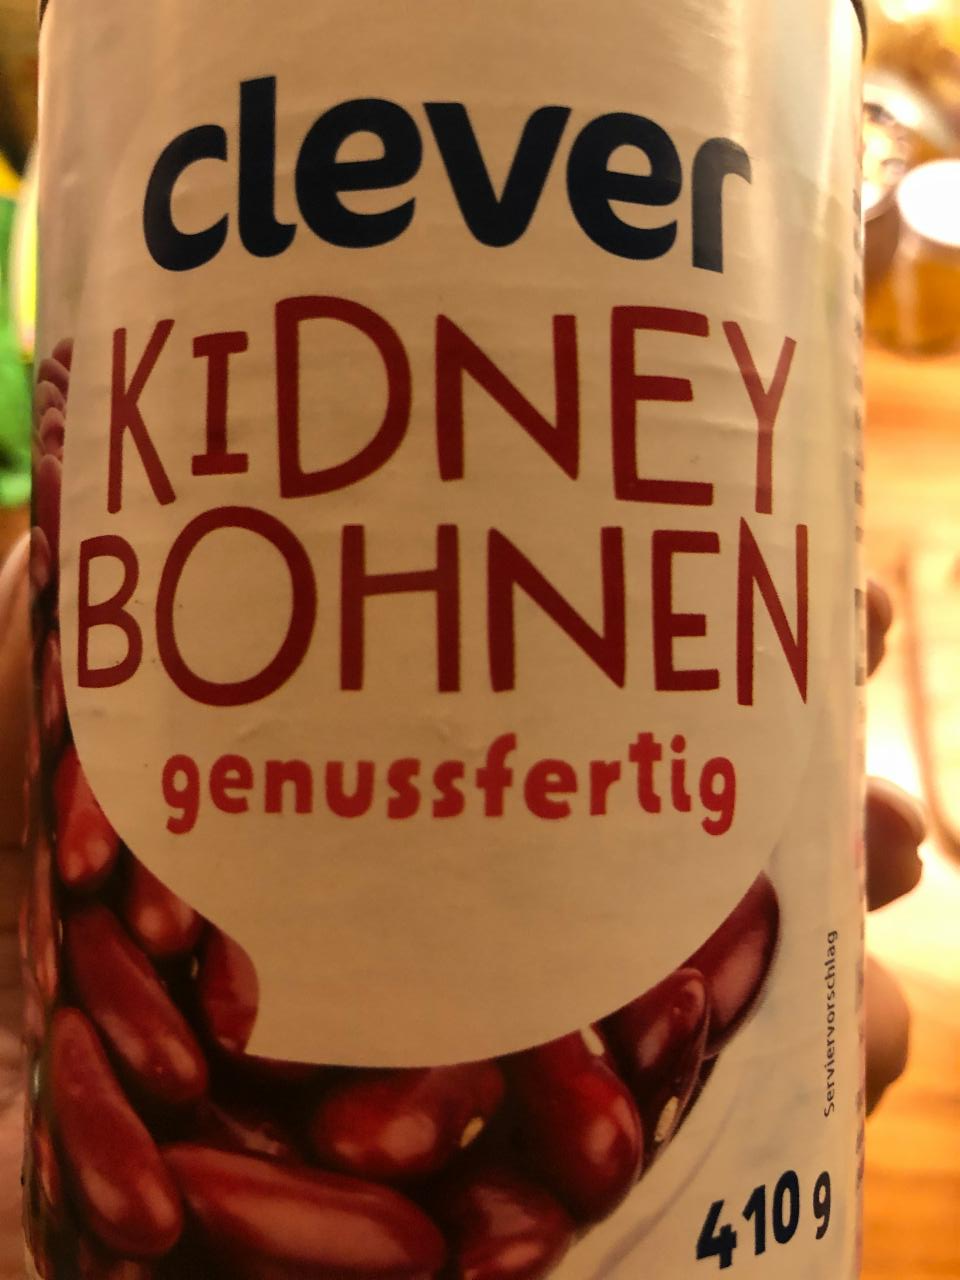 Fotografie - Kidney bohnen genussfertig Clever